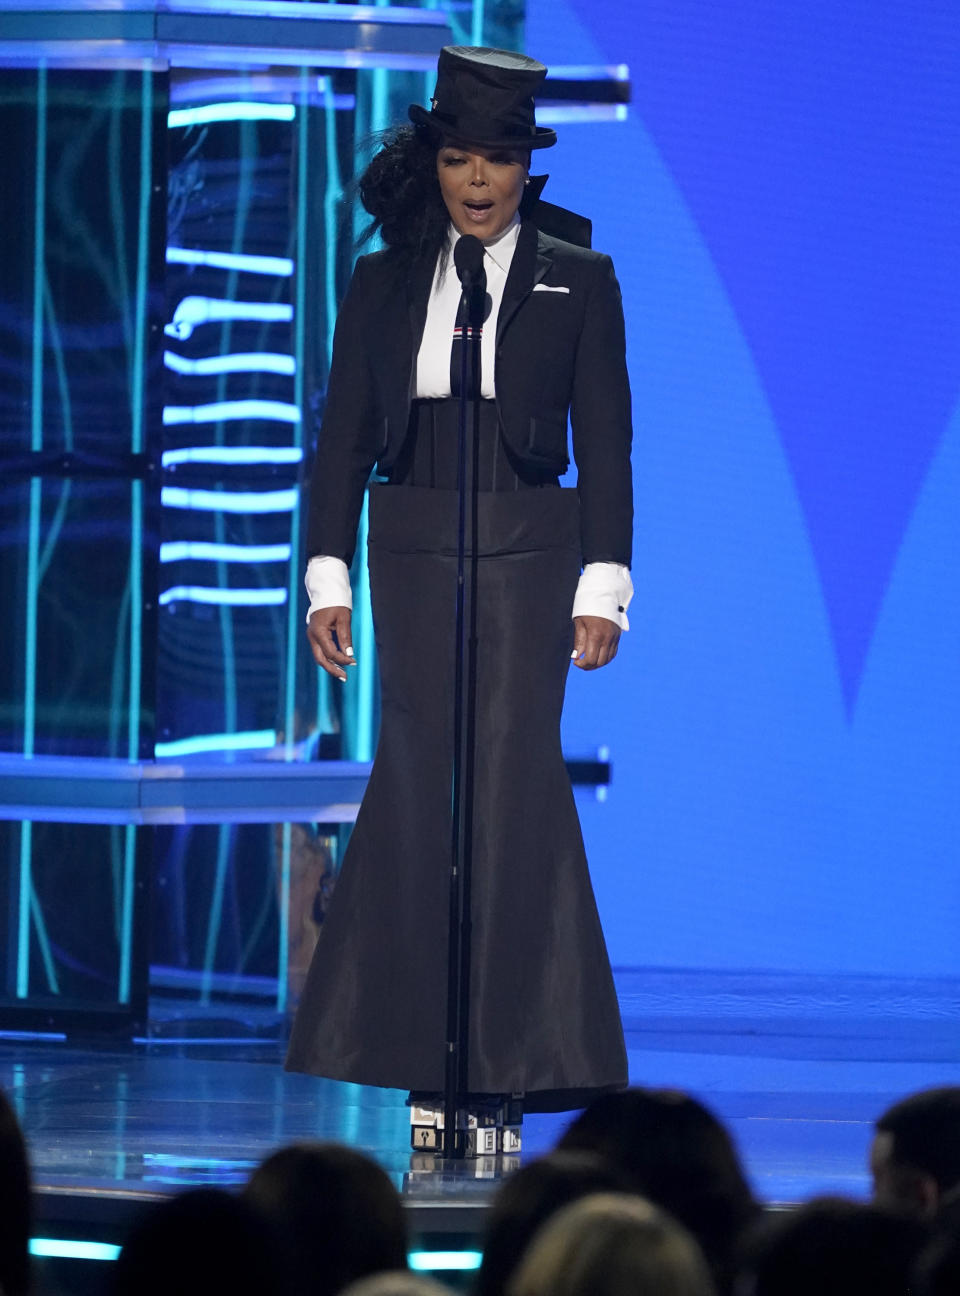 Janet Jackson presenta el Premio Ícono durante la ceremonia de los Premios Billboard de la Música, el domingo 15 de mayo de 2022 en el MGM Grand Garden Arena en Las Vegas. (Foto AP/Chris Pizzello)